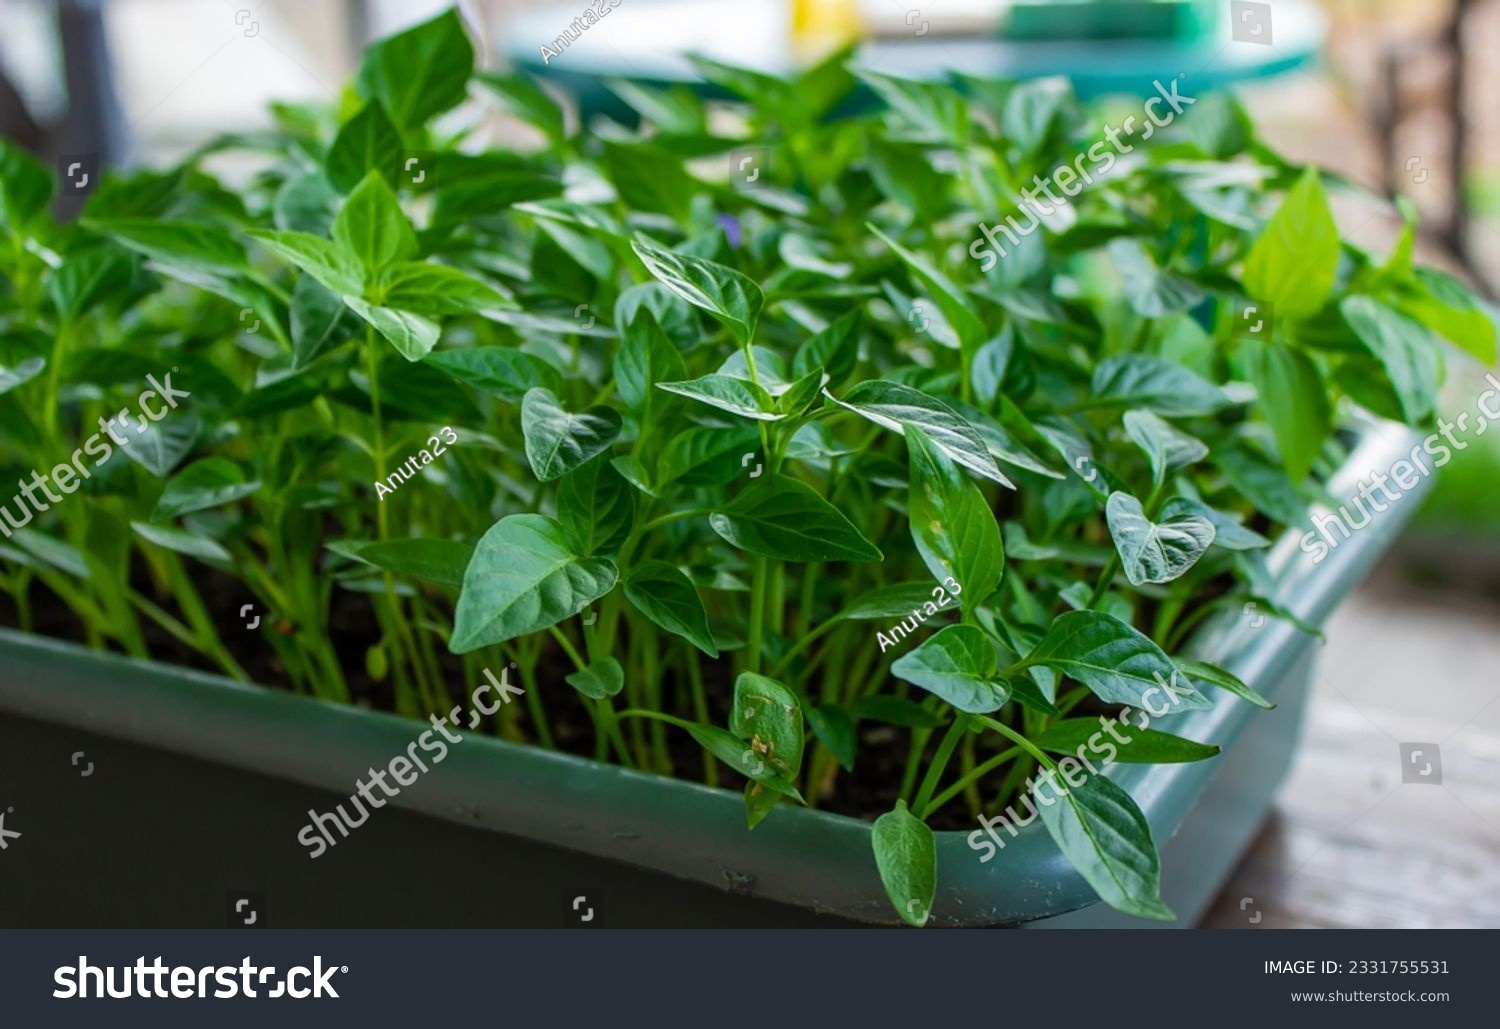 Growing seedlings of sweet pepper. selective focus #2331755531